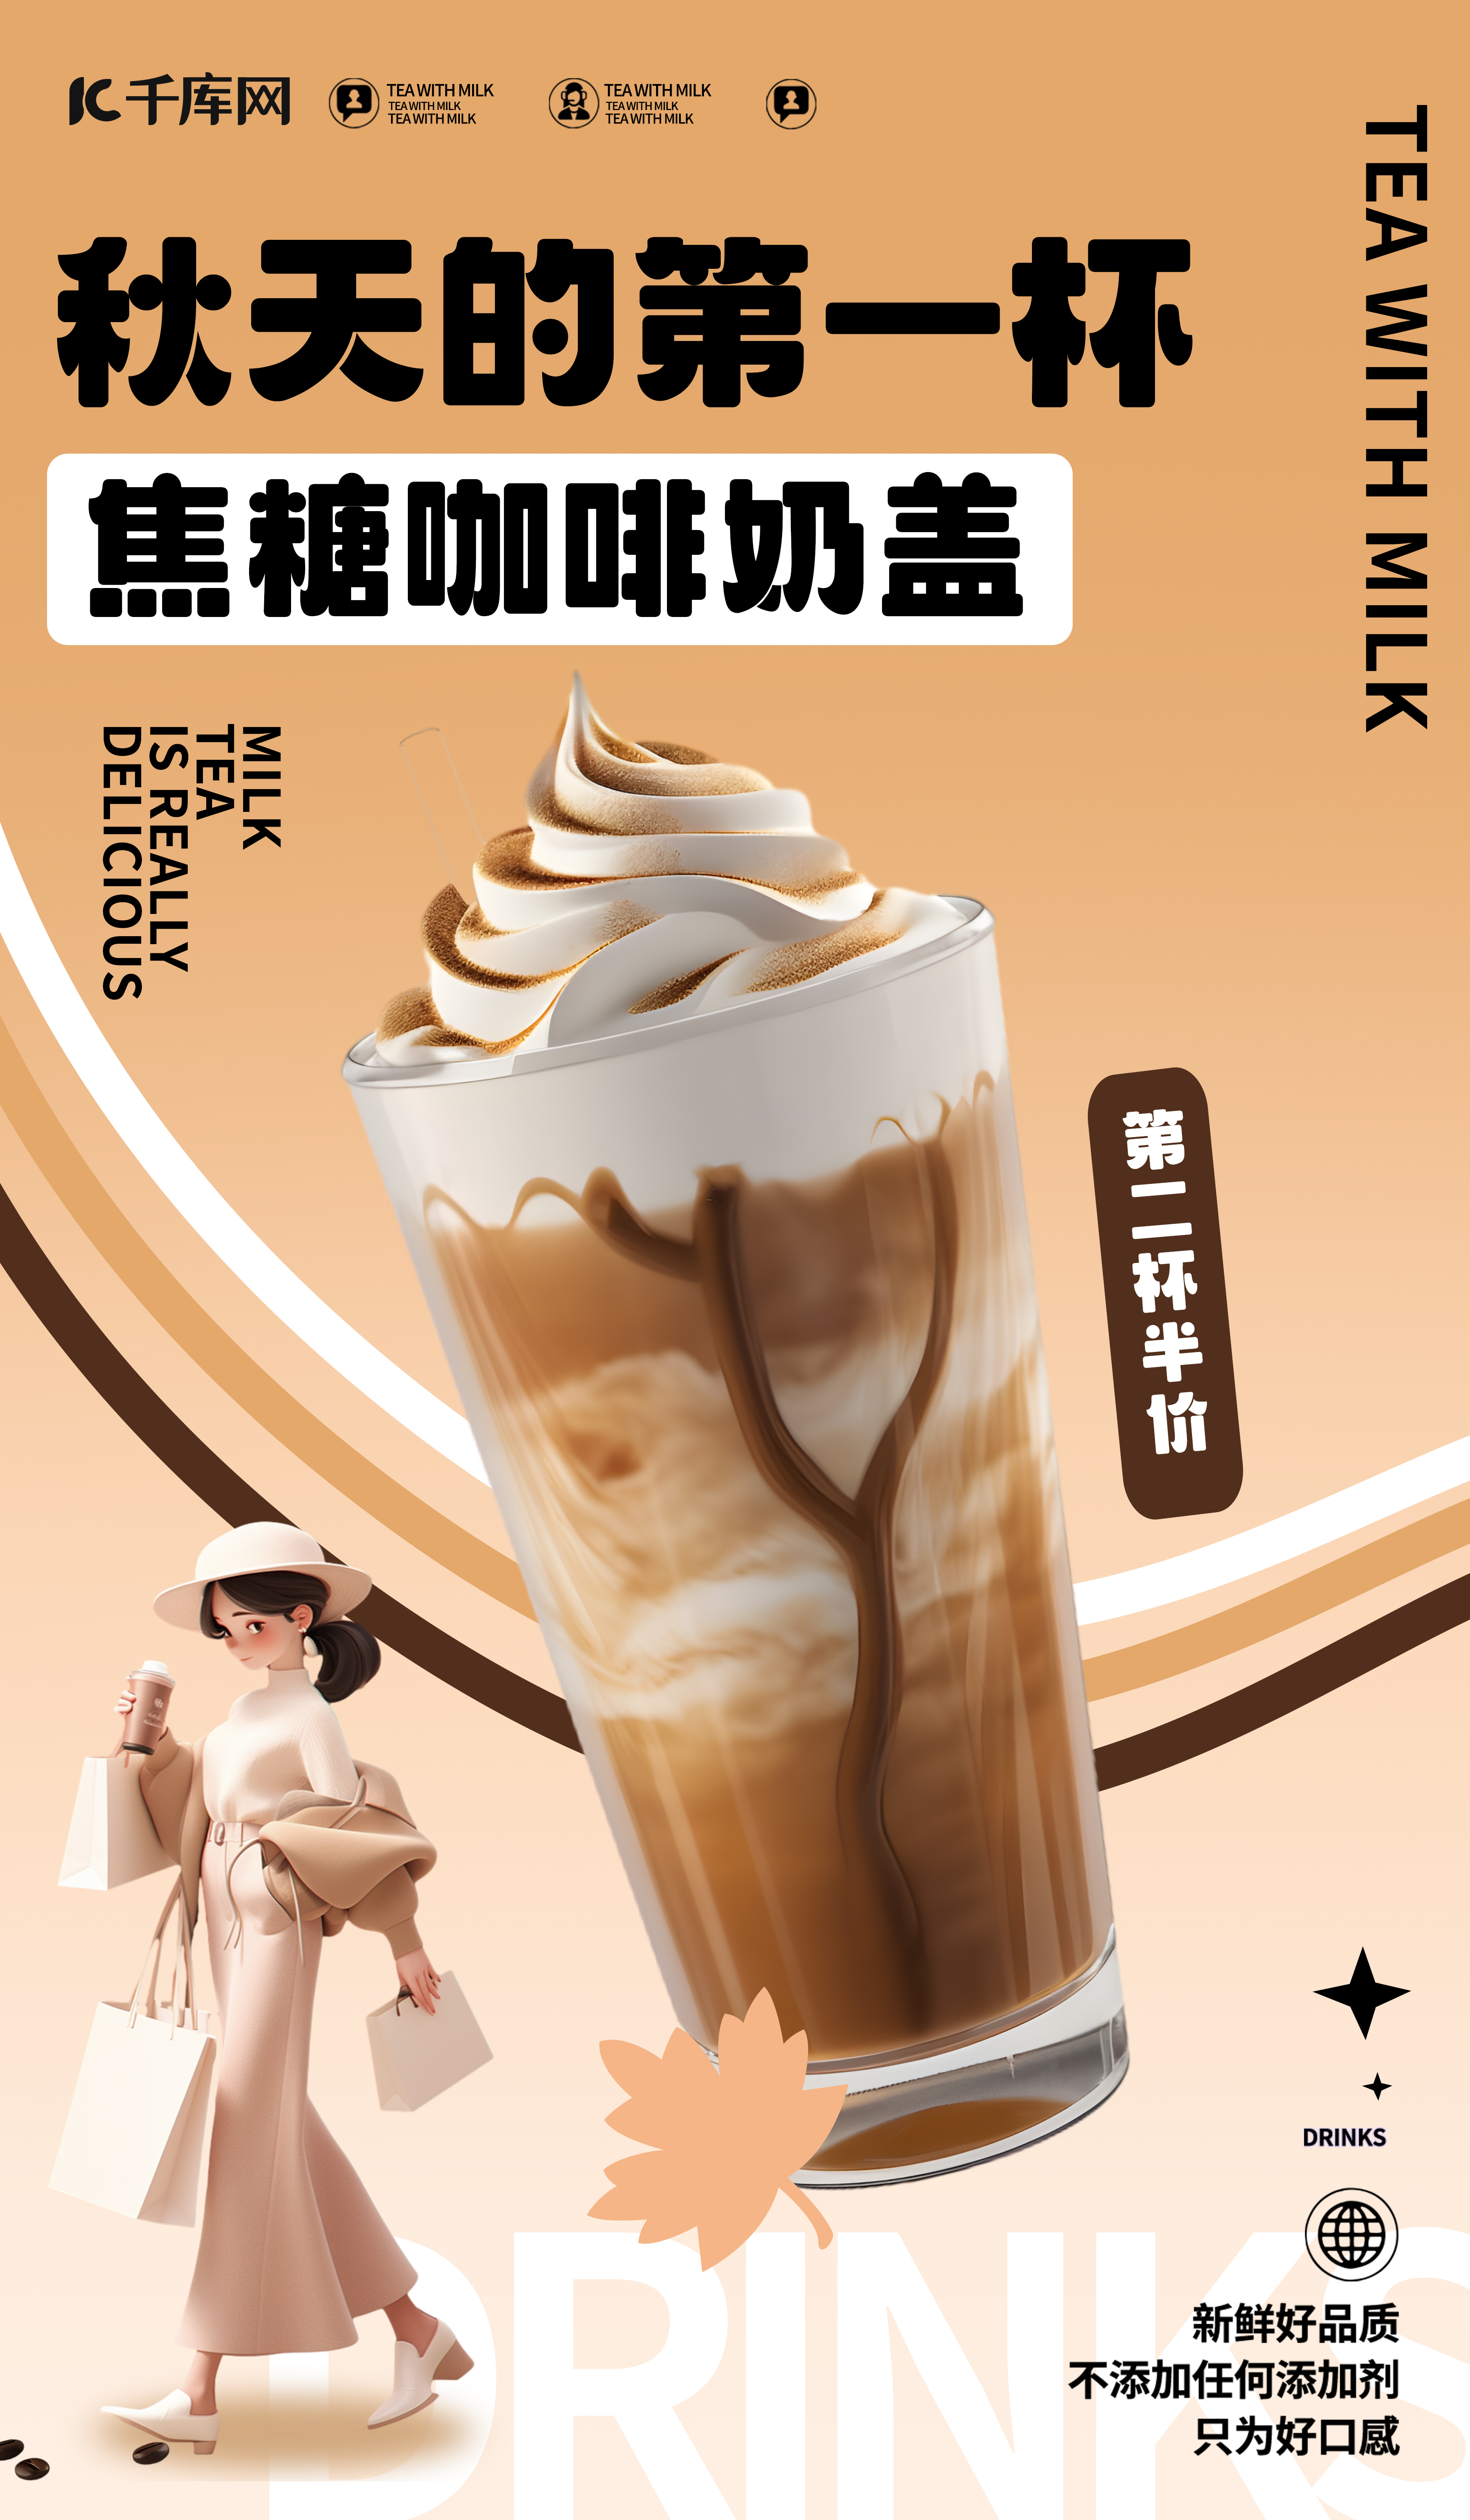 奶茶店AIGG模版浅咖色简约广告宣传海报图片